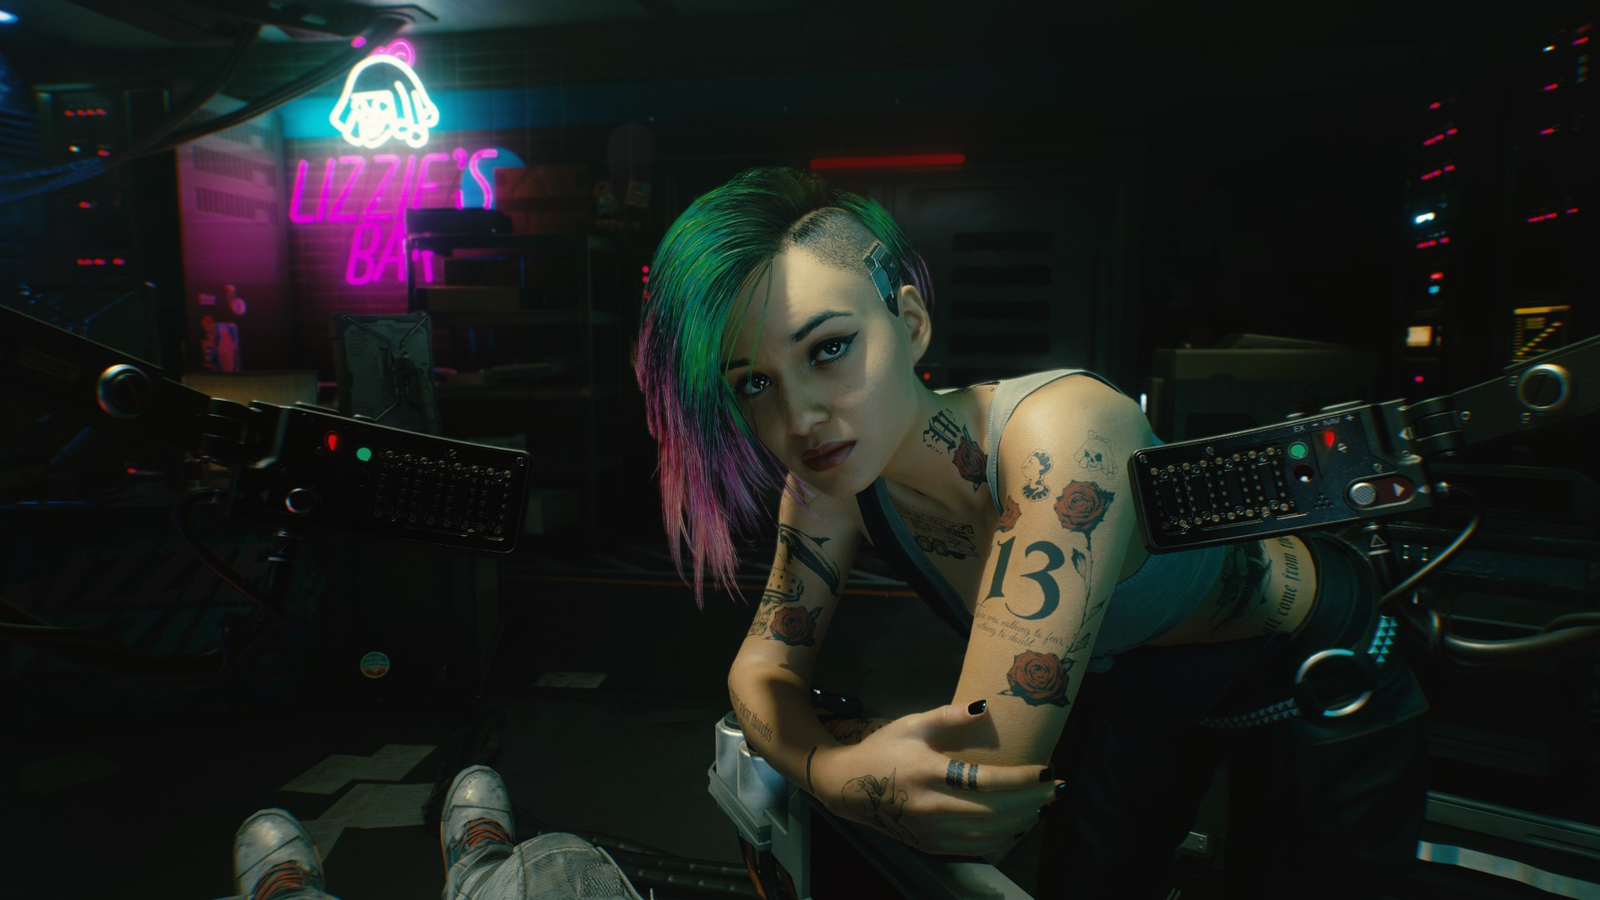 Cyber punk, cyberpunk 2077, 2077, gaming, cyberpunk, HD phone